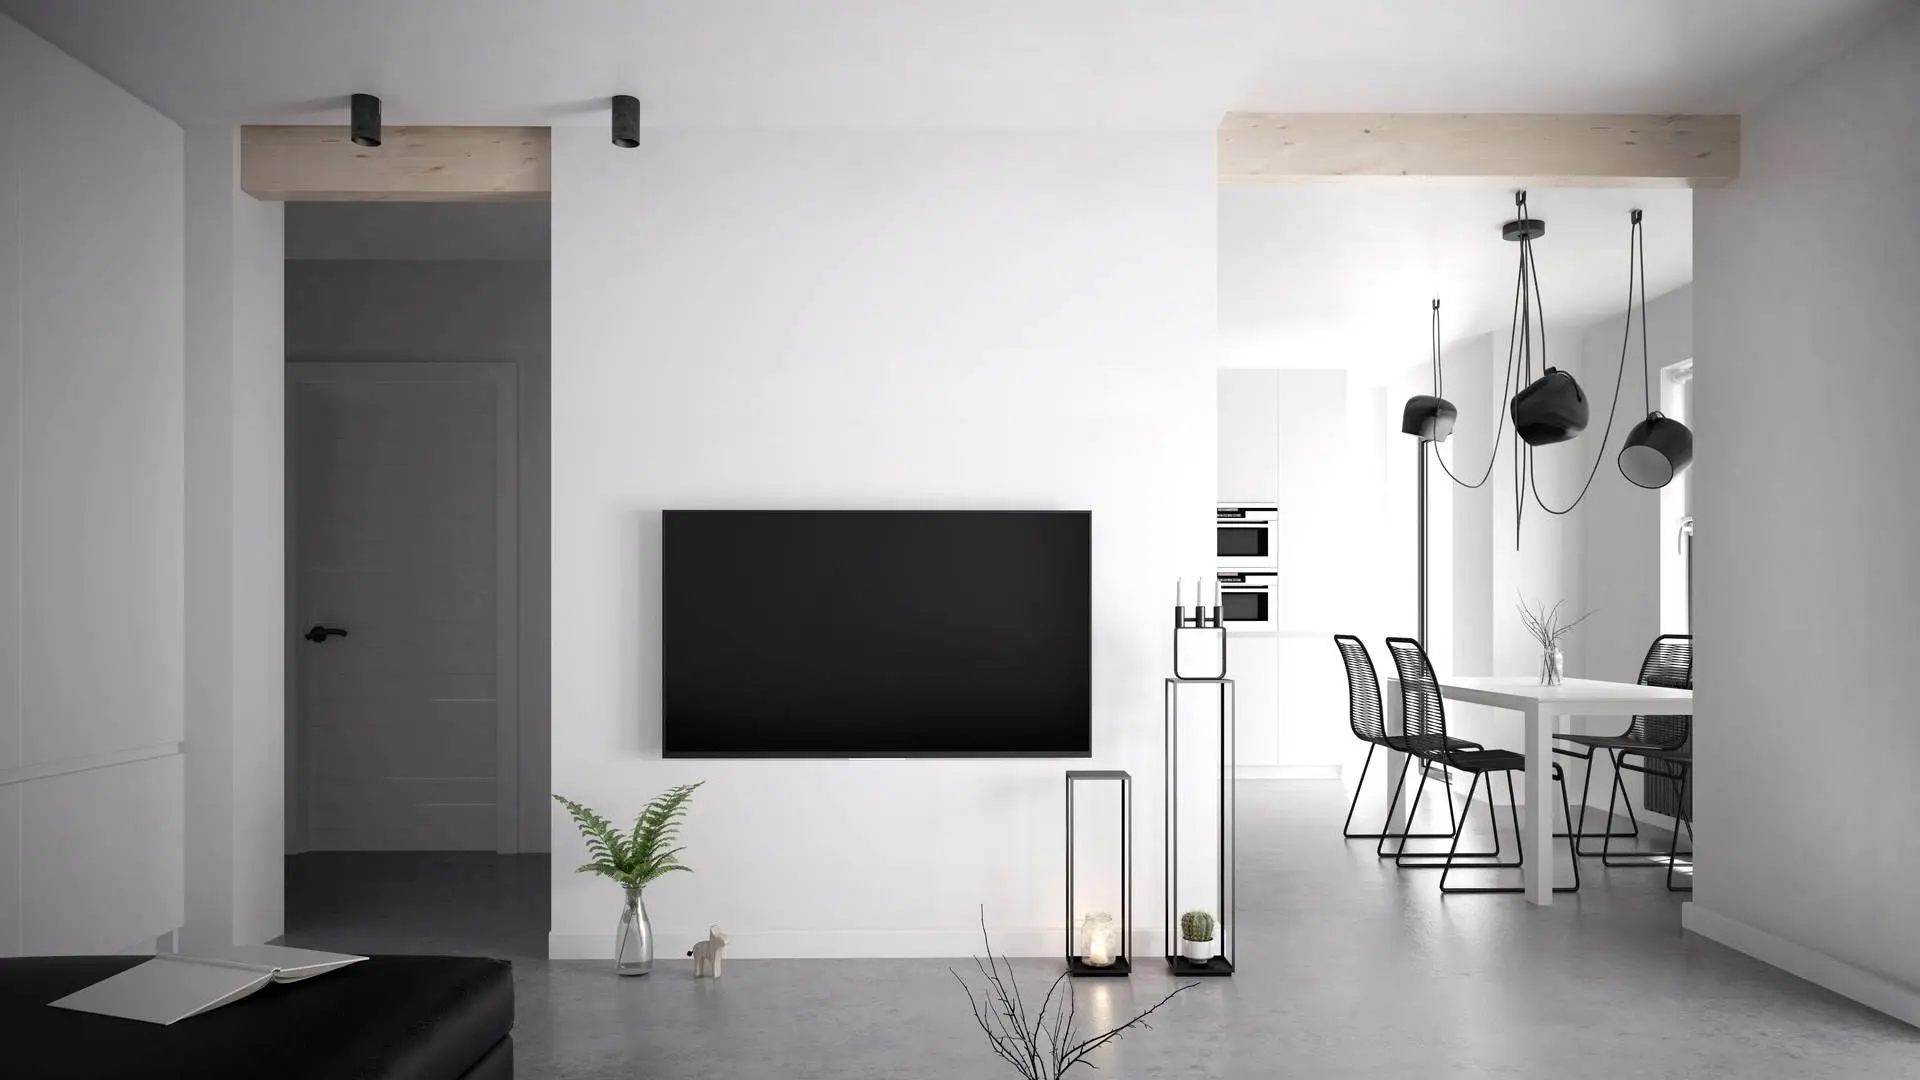 Bydlení s minimalistickou výzdobou a mikrocementem na podlaze